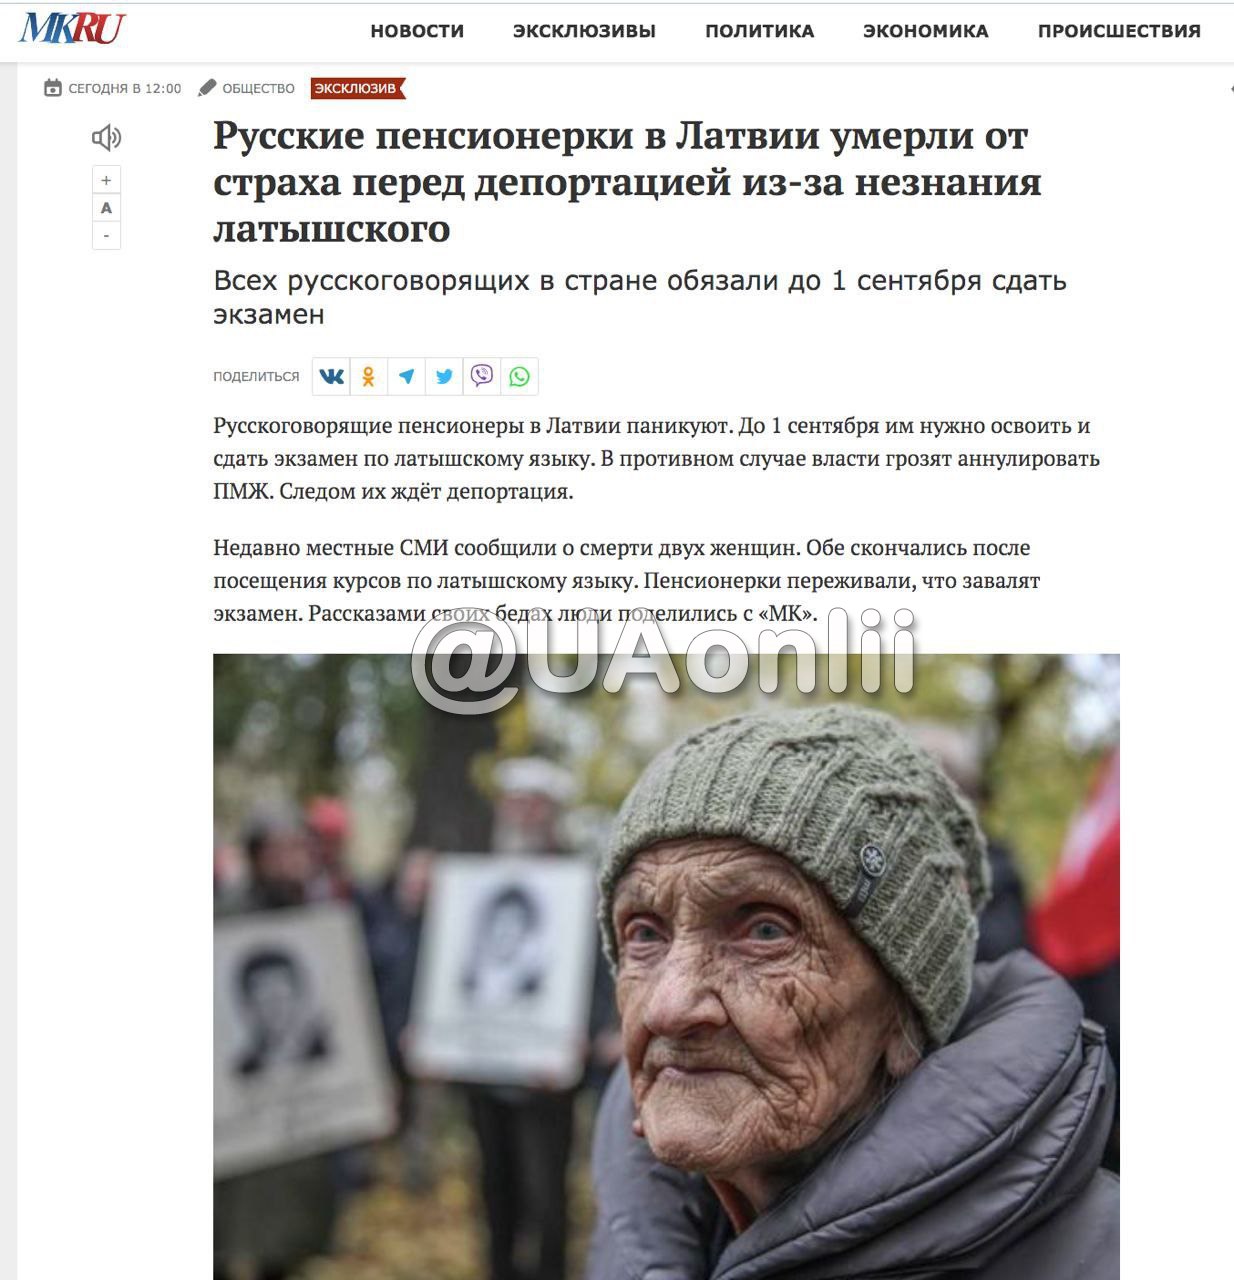 Русскоязычные пенсионерки из Латвии умерли